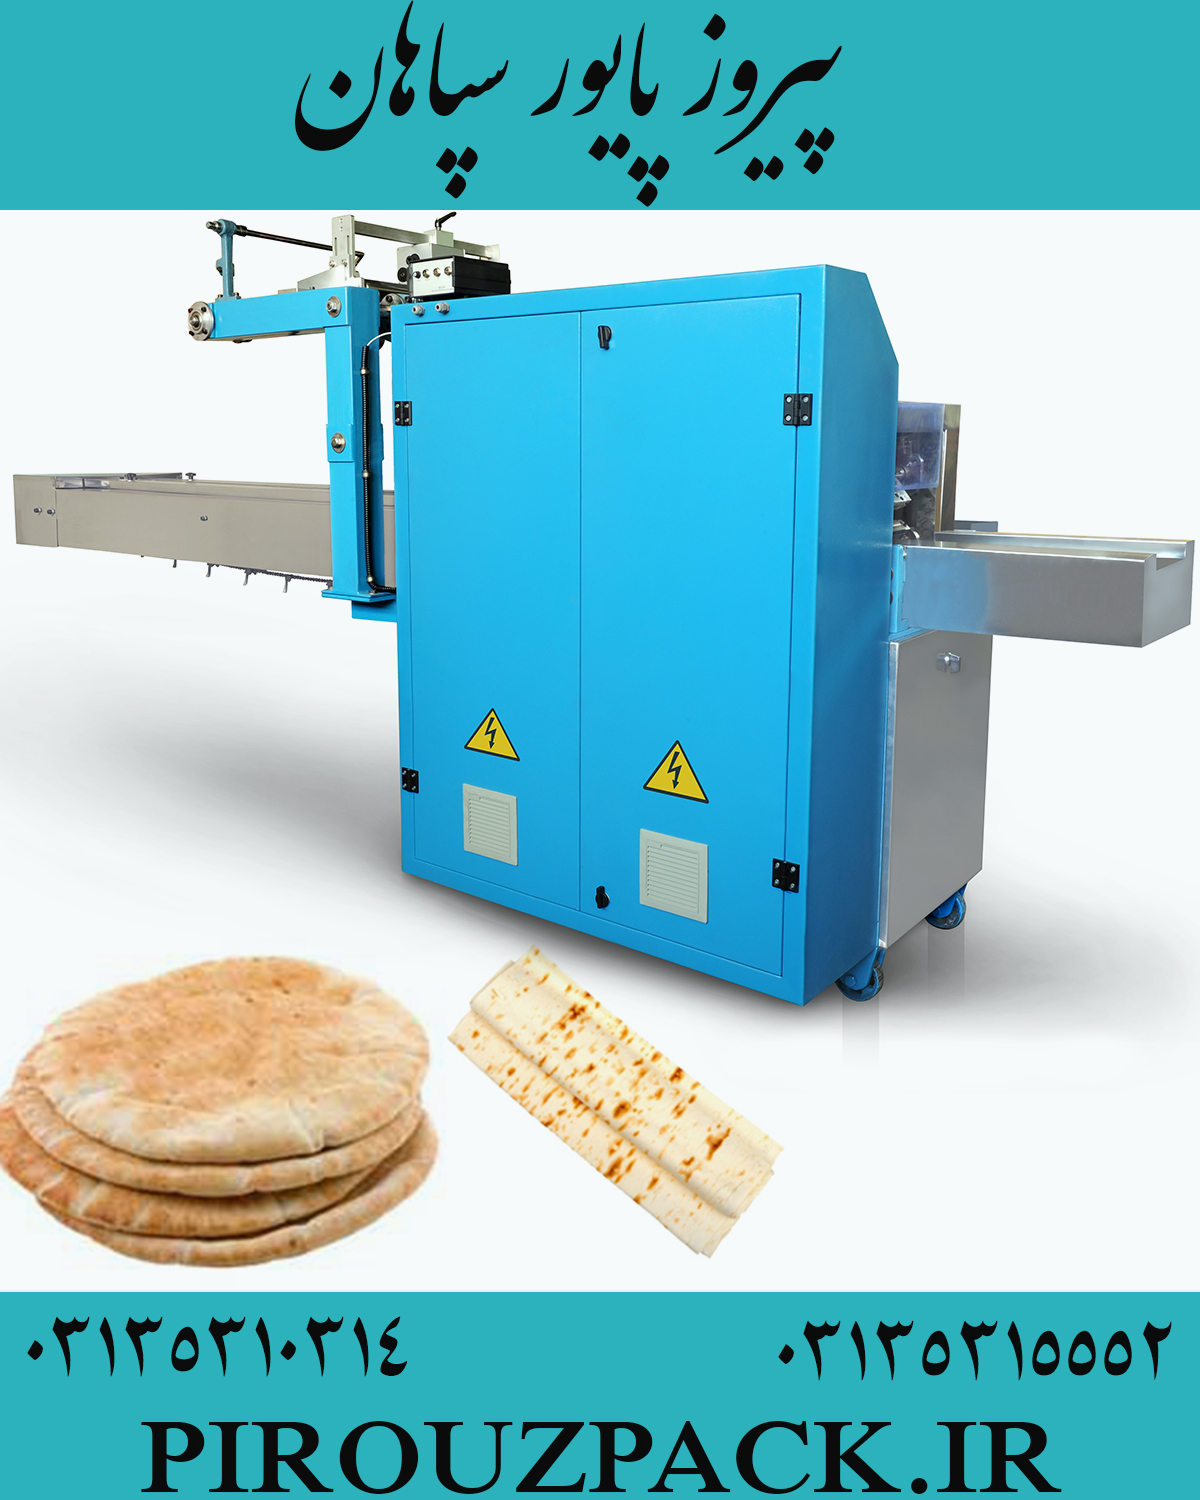 دستگاه بسته بندی نان برش خورده در ماشین سازی پیروزپک